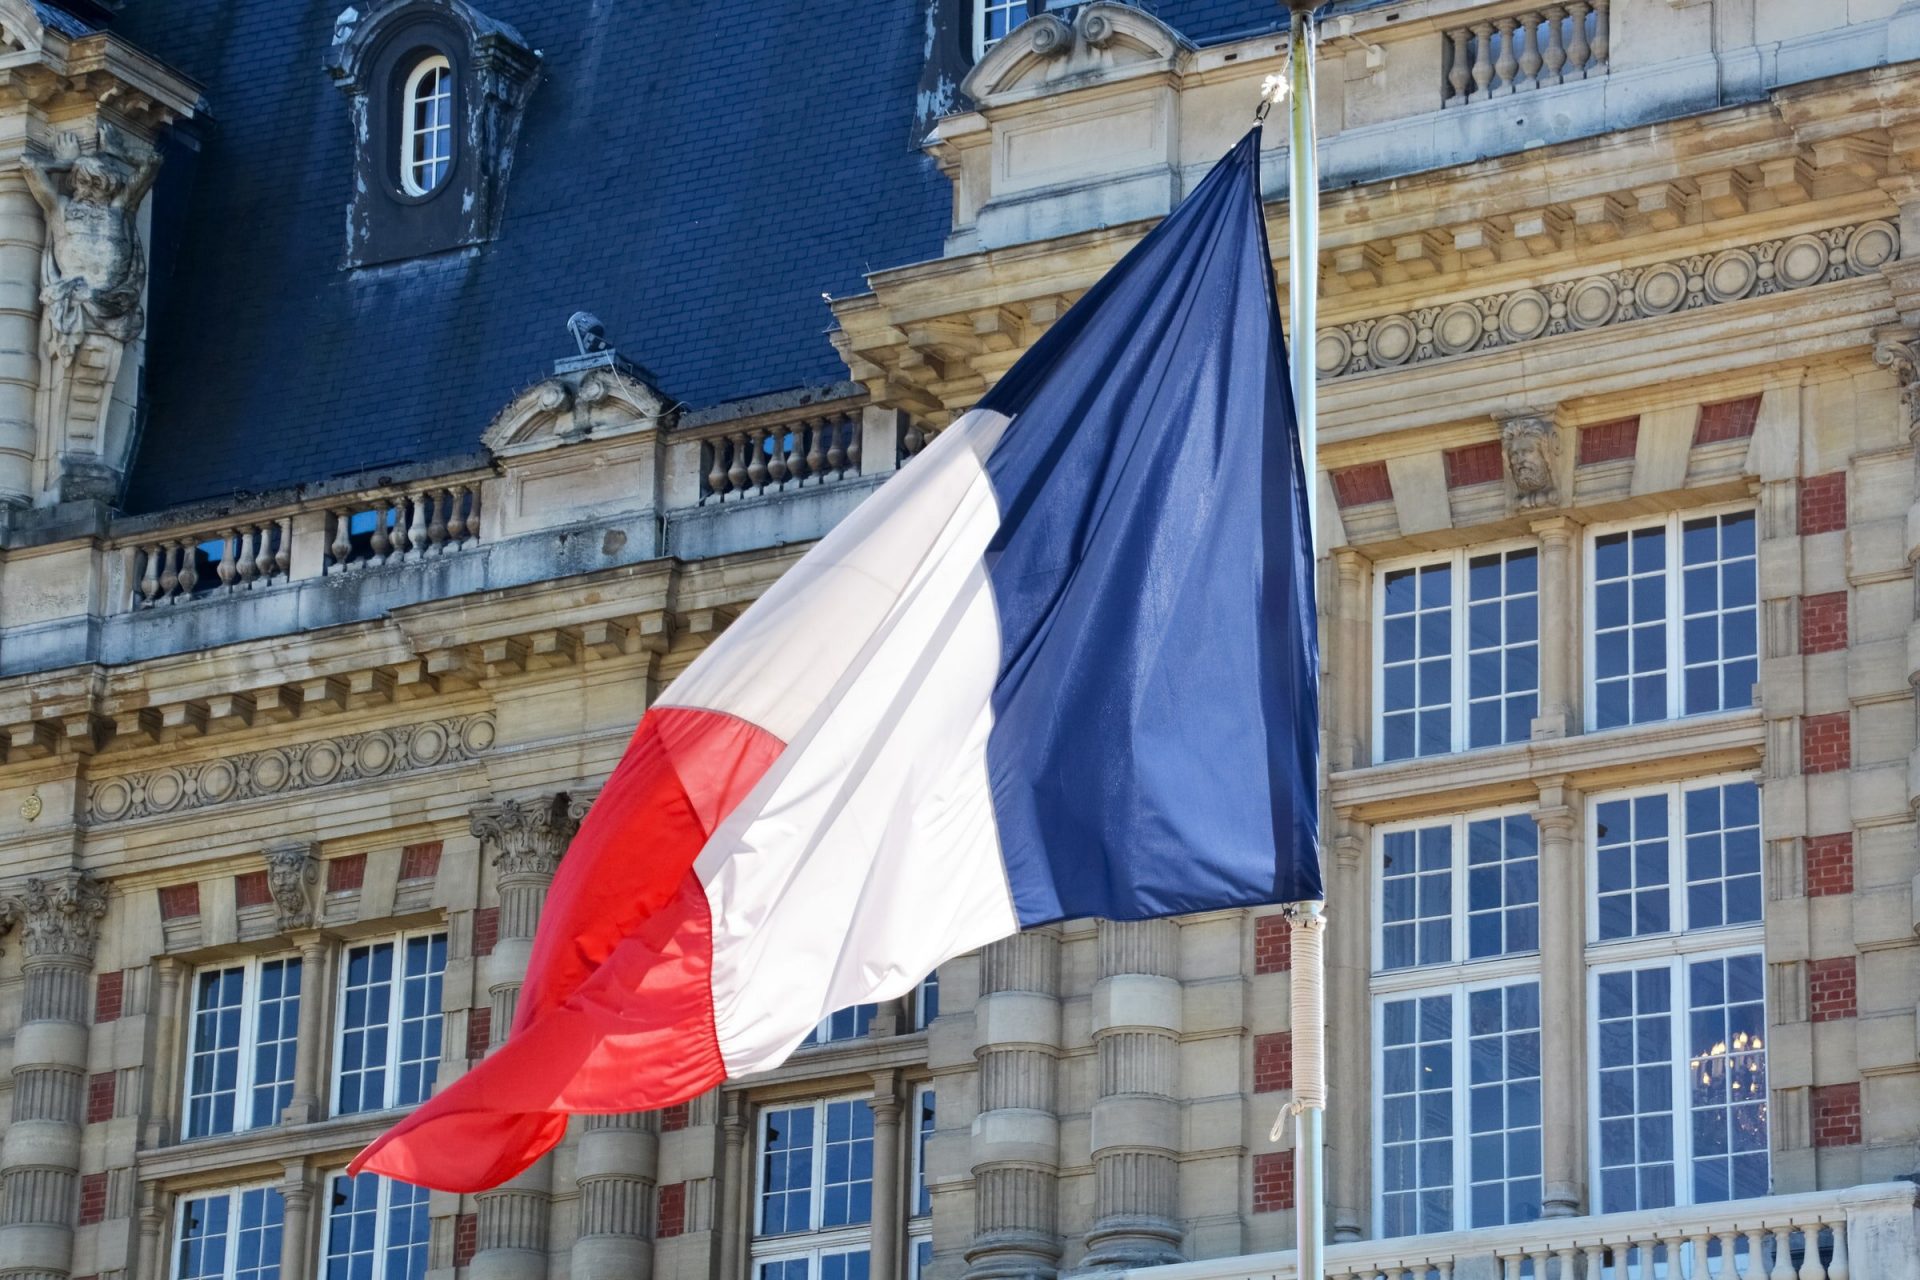 Ֆրանսիան կոչ է անում շտապ ՄԱԿ-ի ԱԽ նիստ հրավիրել Արցախի հարցով